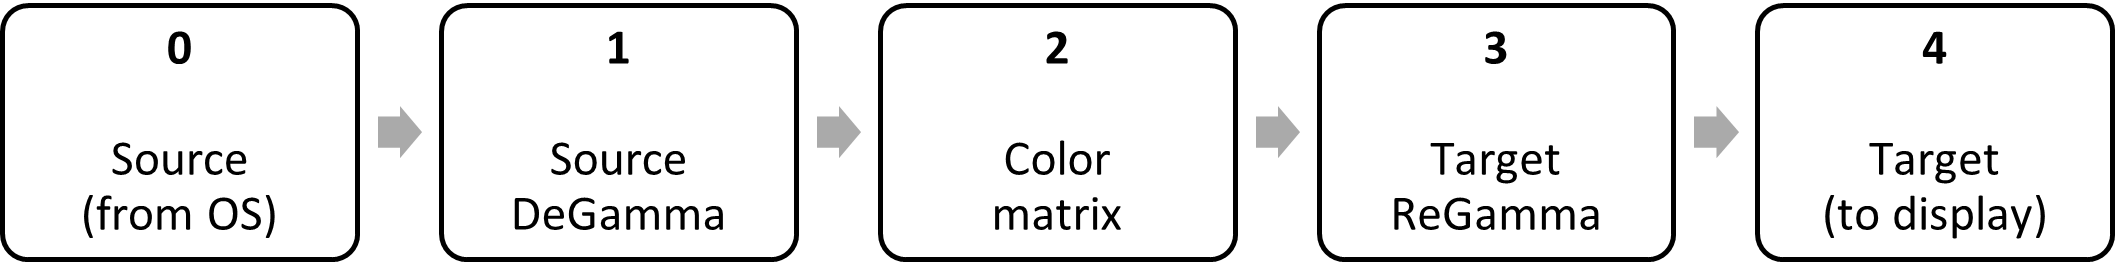 블록 다이어그램: 원본 degamma, 색 매트릭스, 대상 다시 gamma